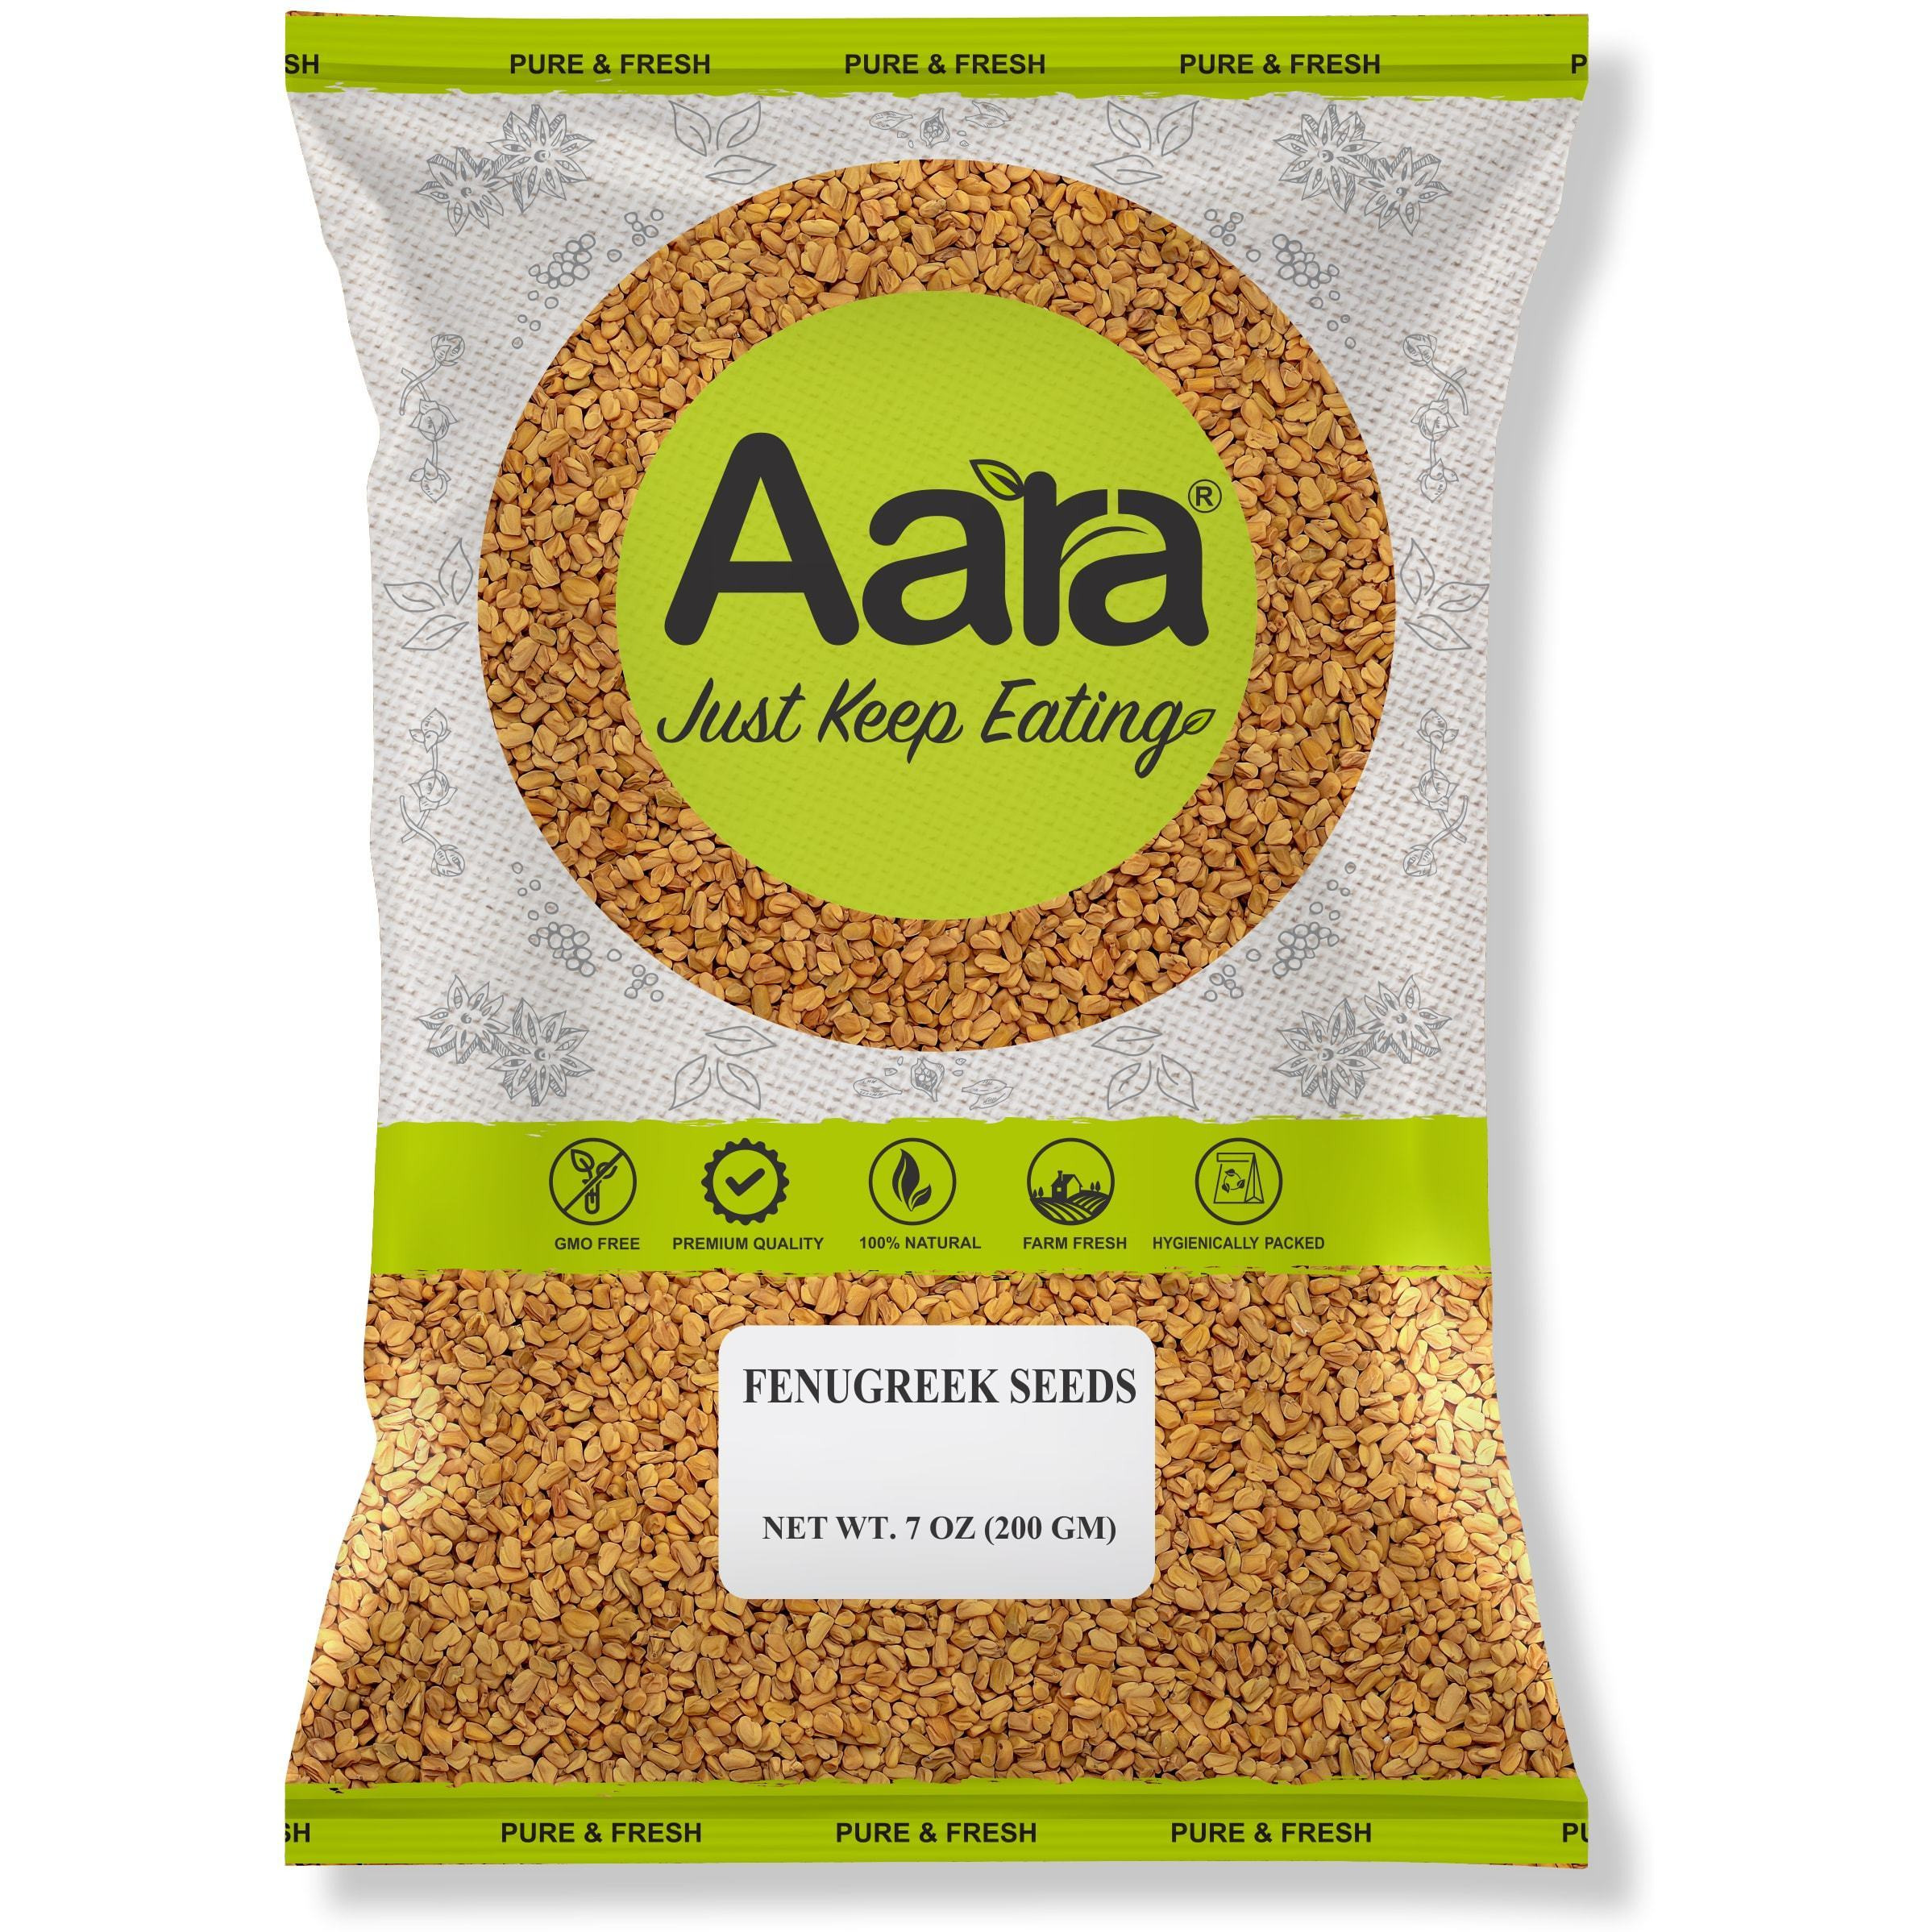 Aara Fenugreek Seeds - 5 lb